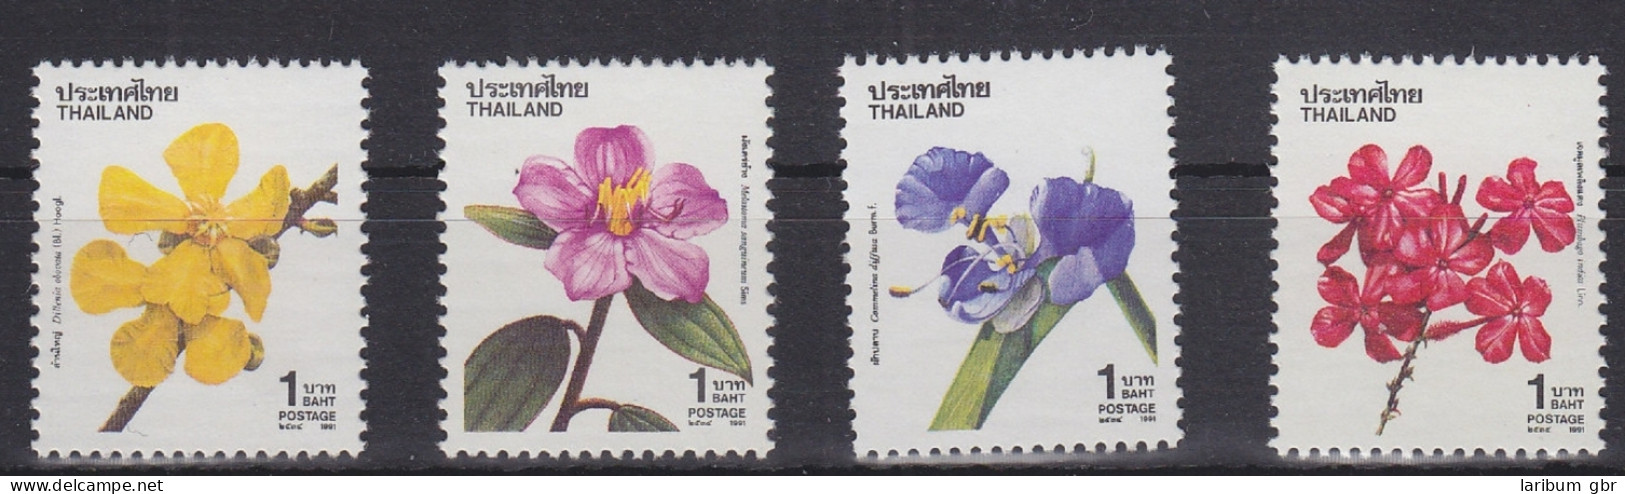 Thailand 1443-1446 Postfrisch Natur Blumen, MNH #RA172 - Thailand